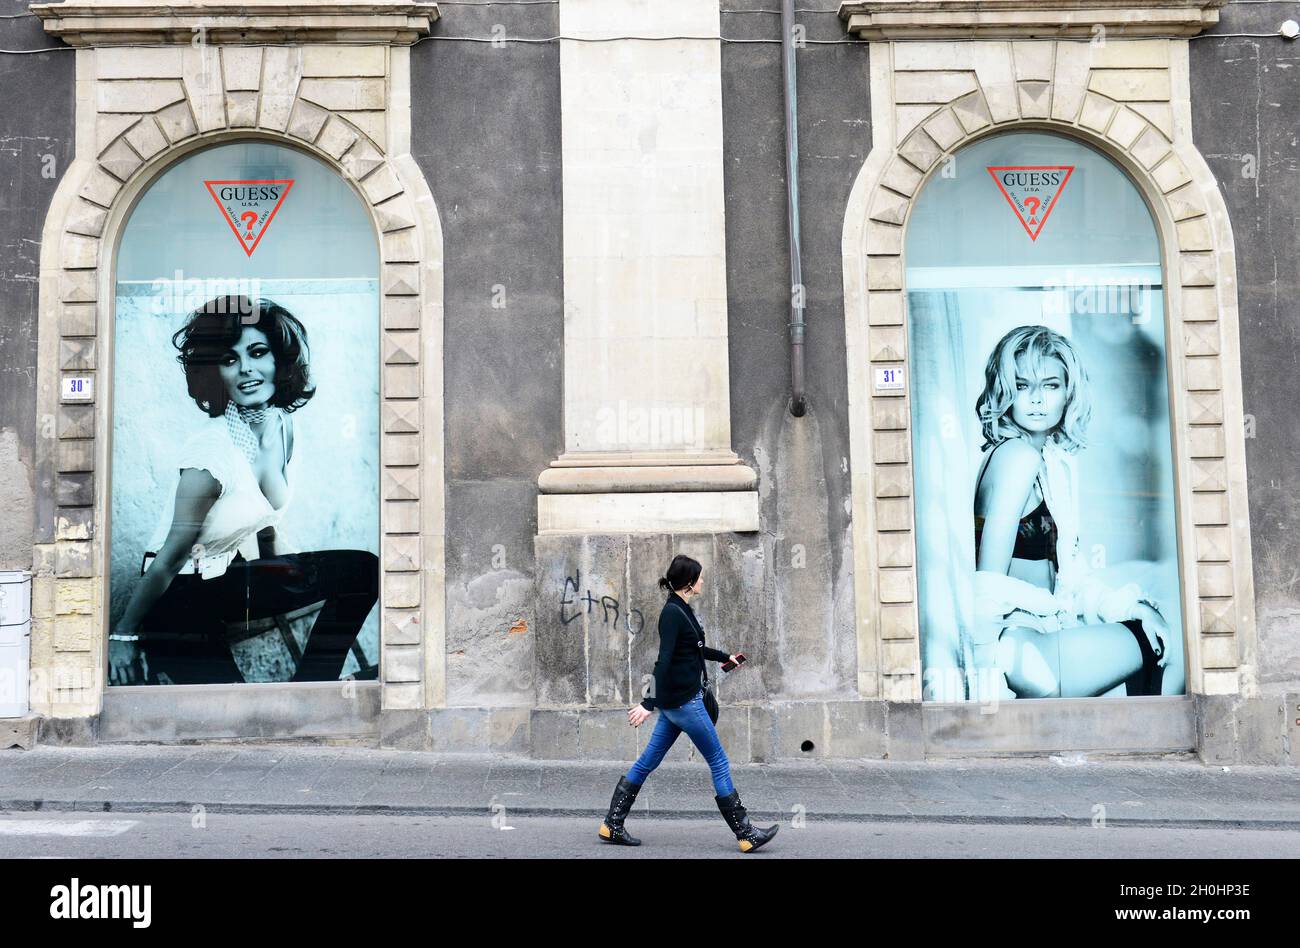 Eine Italienerin, die unter einer großen Werbung für das Bekleidungsgeschäft Guess im Palazzo Tezzano in Catania, Italien, läuft. Stockfoto